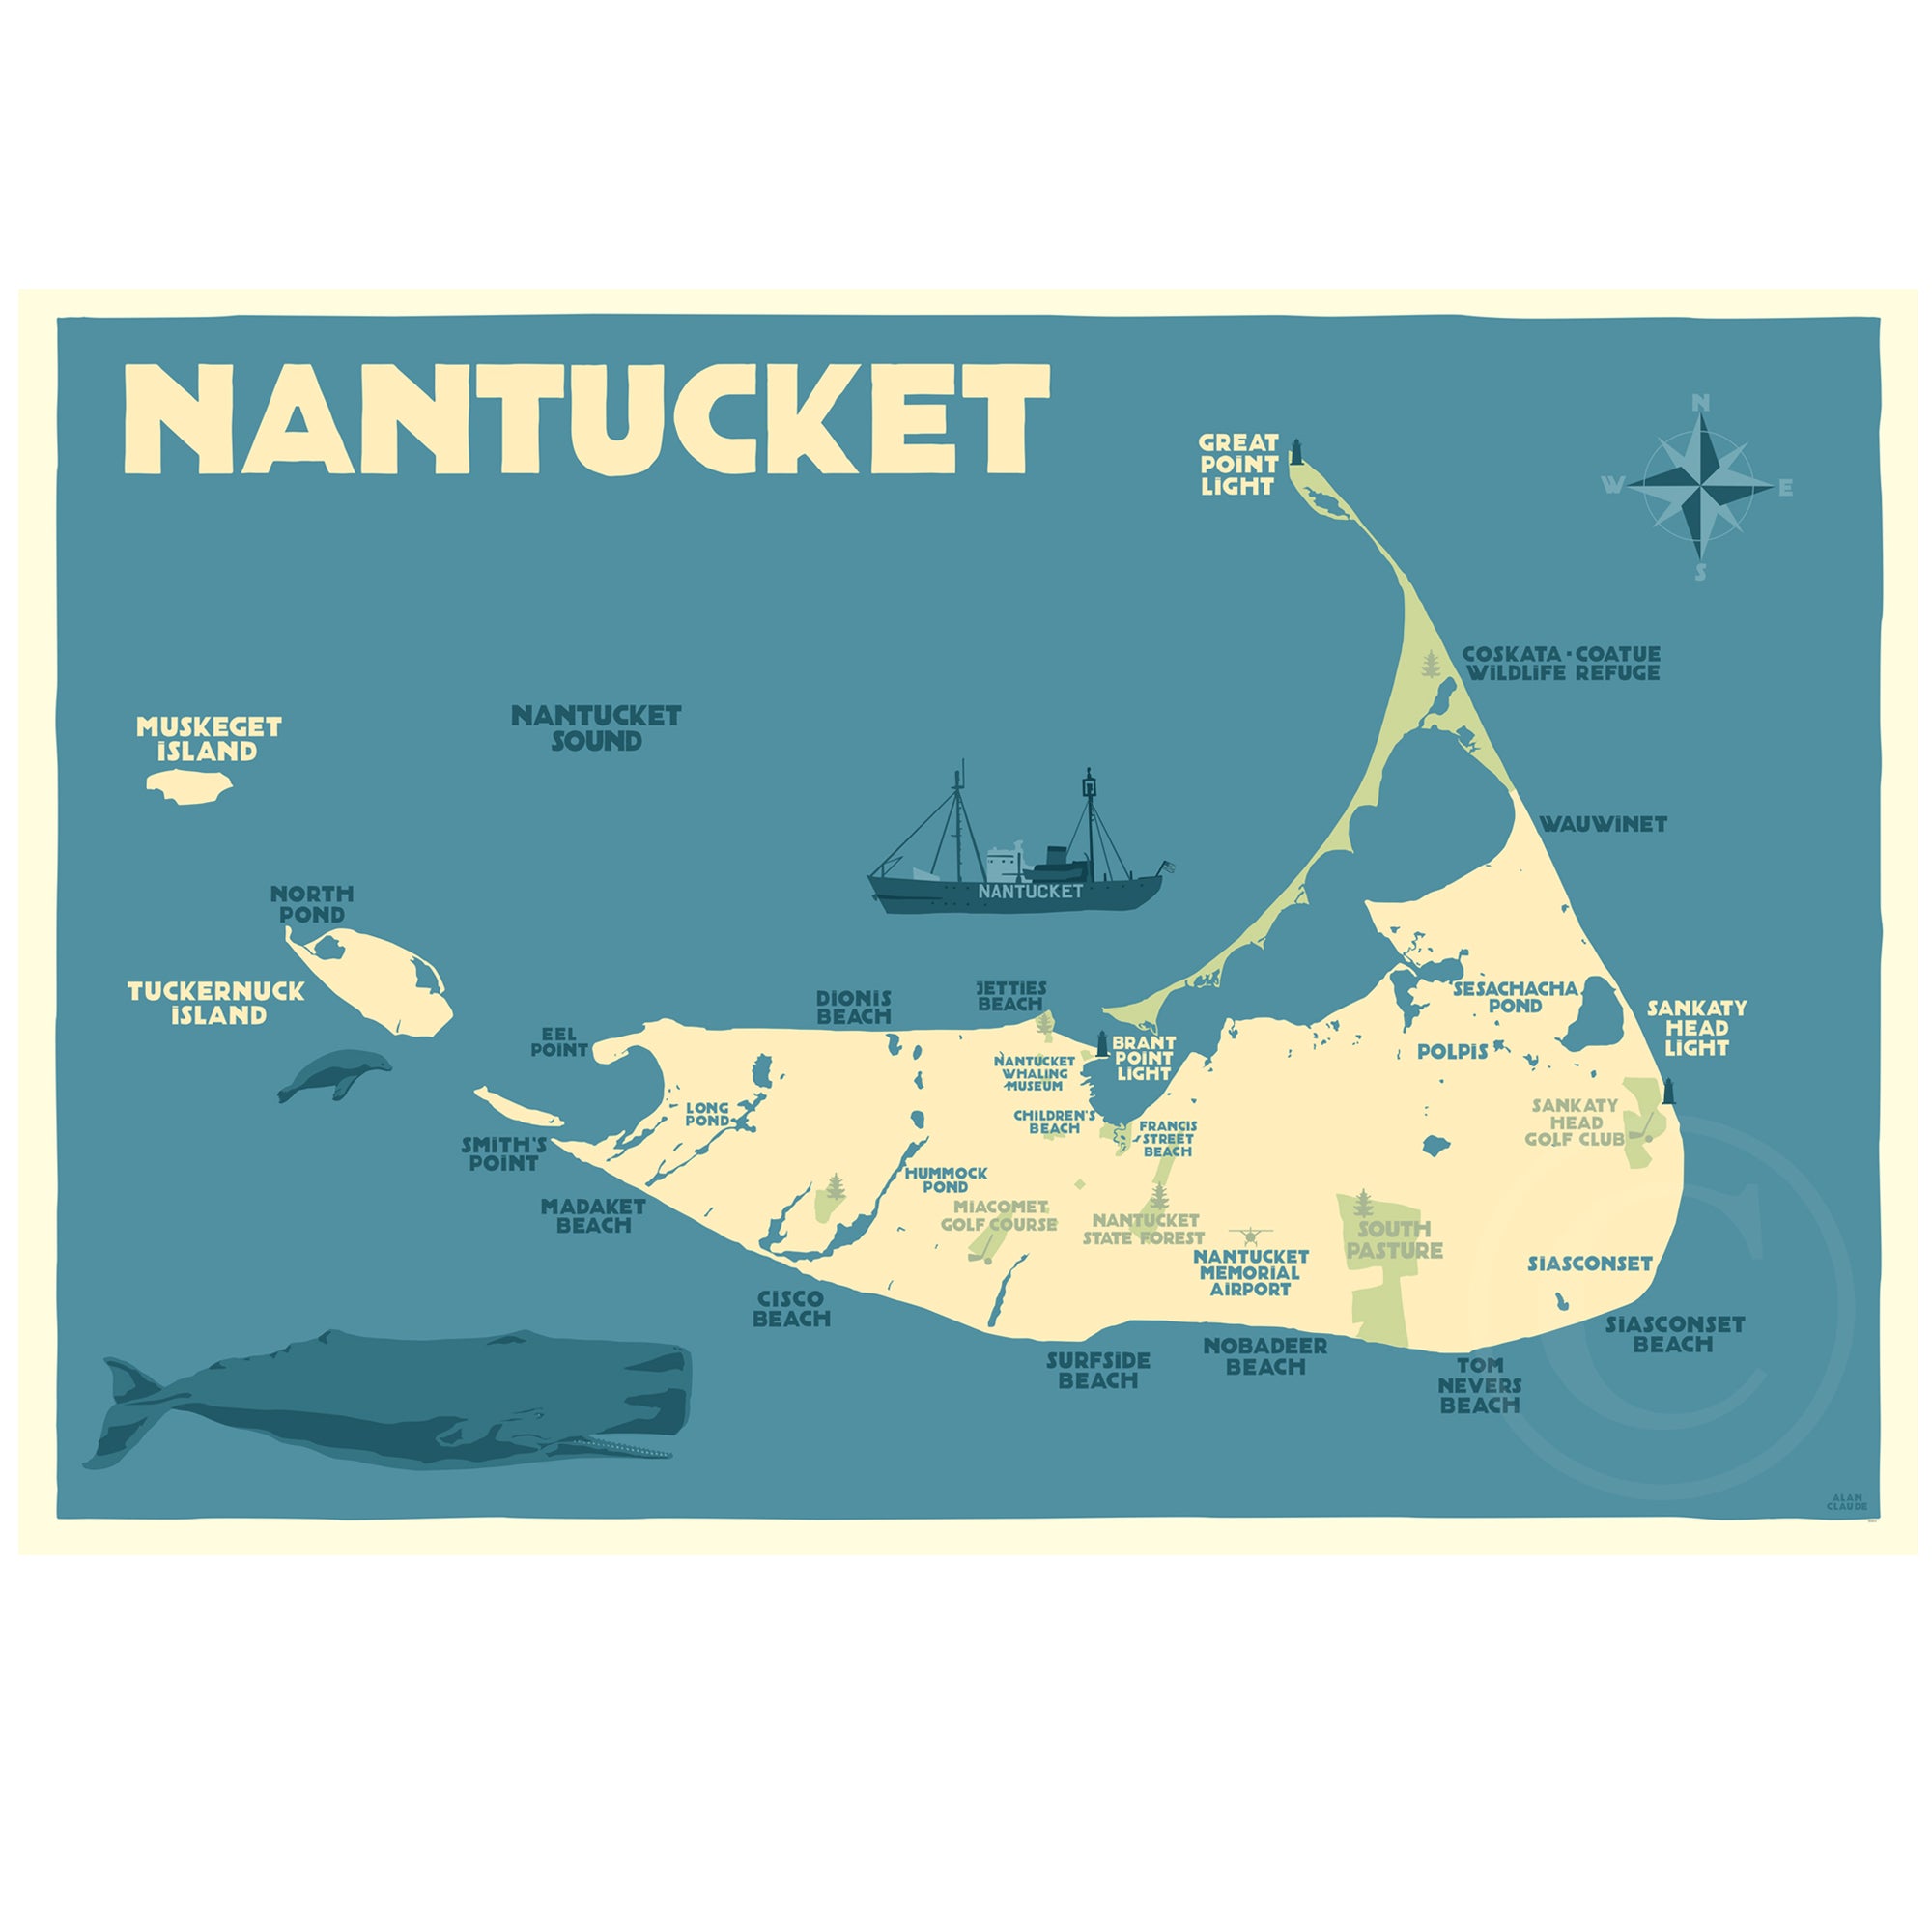 Nantucket Map Art Print 36" x 53" Travel Poster By Alan Claude - Massachusetts